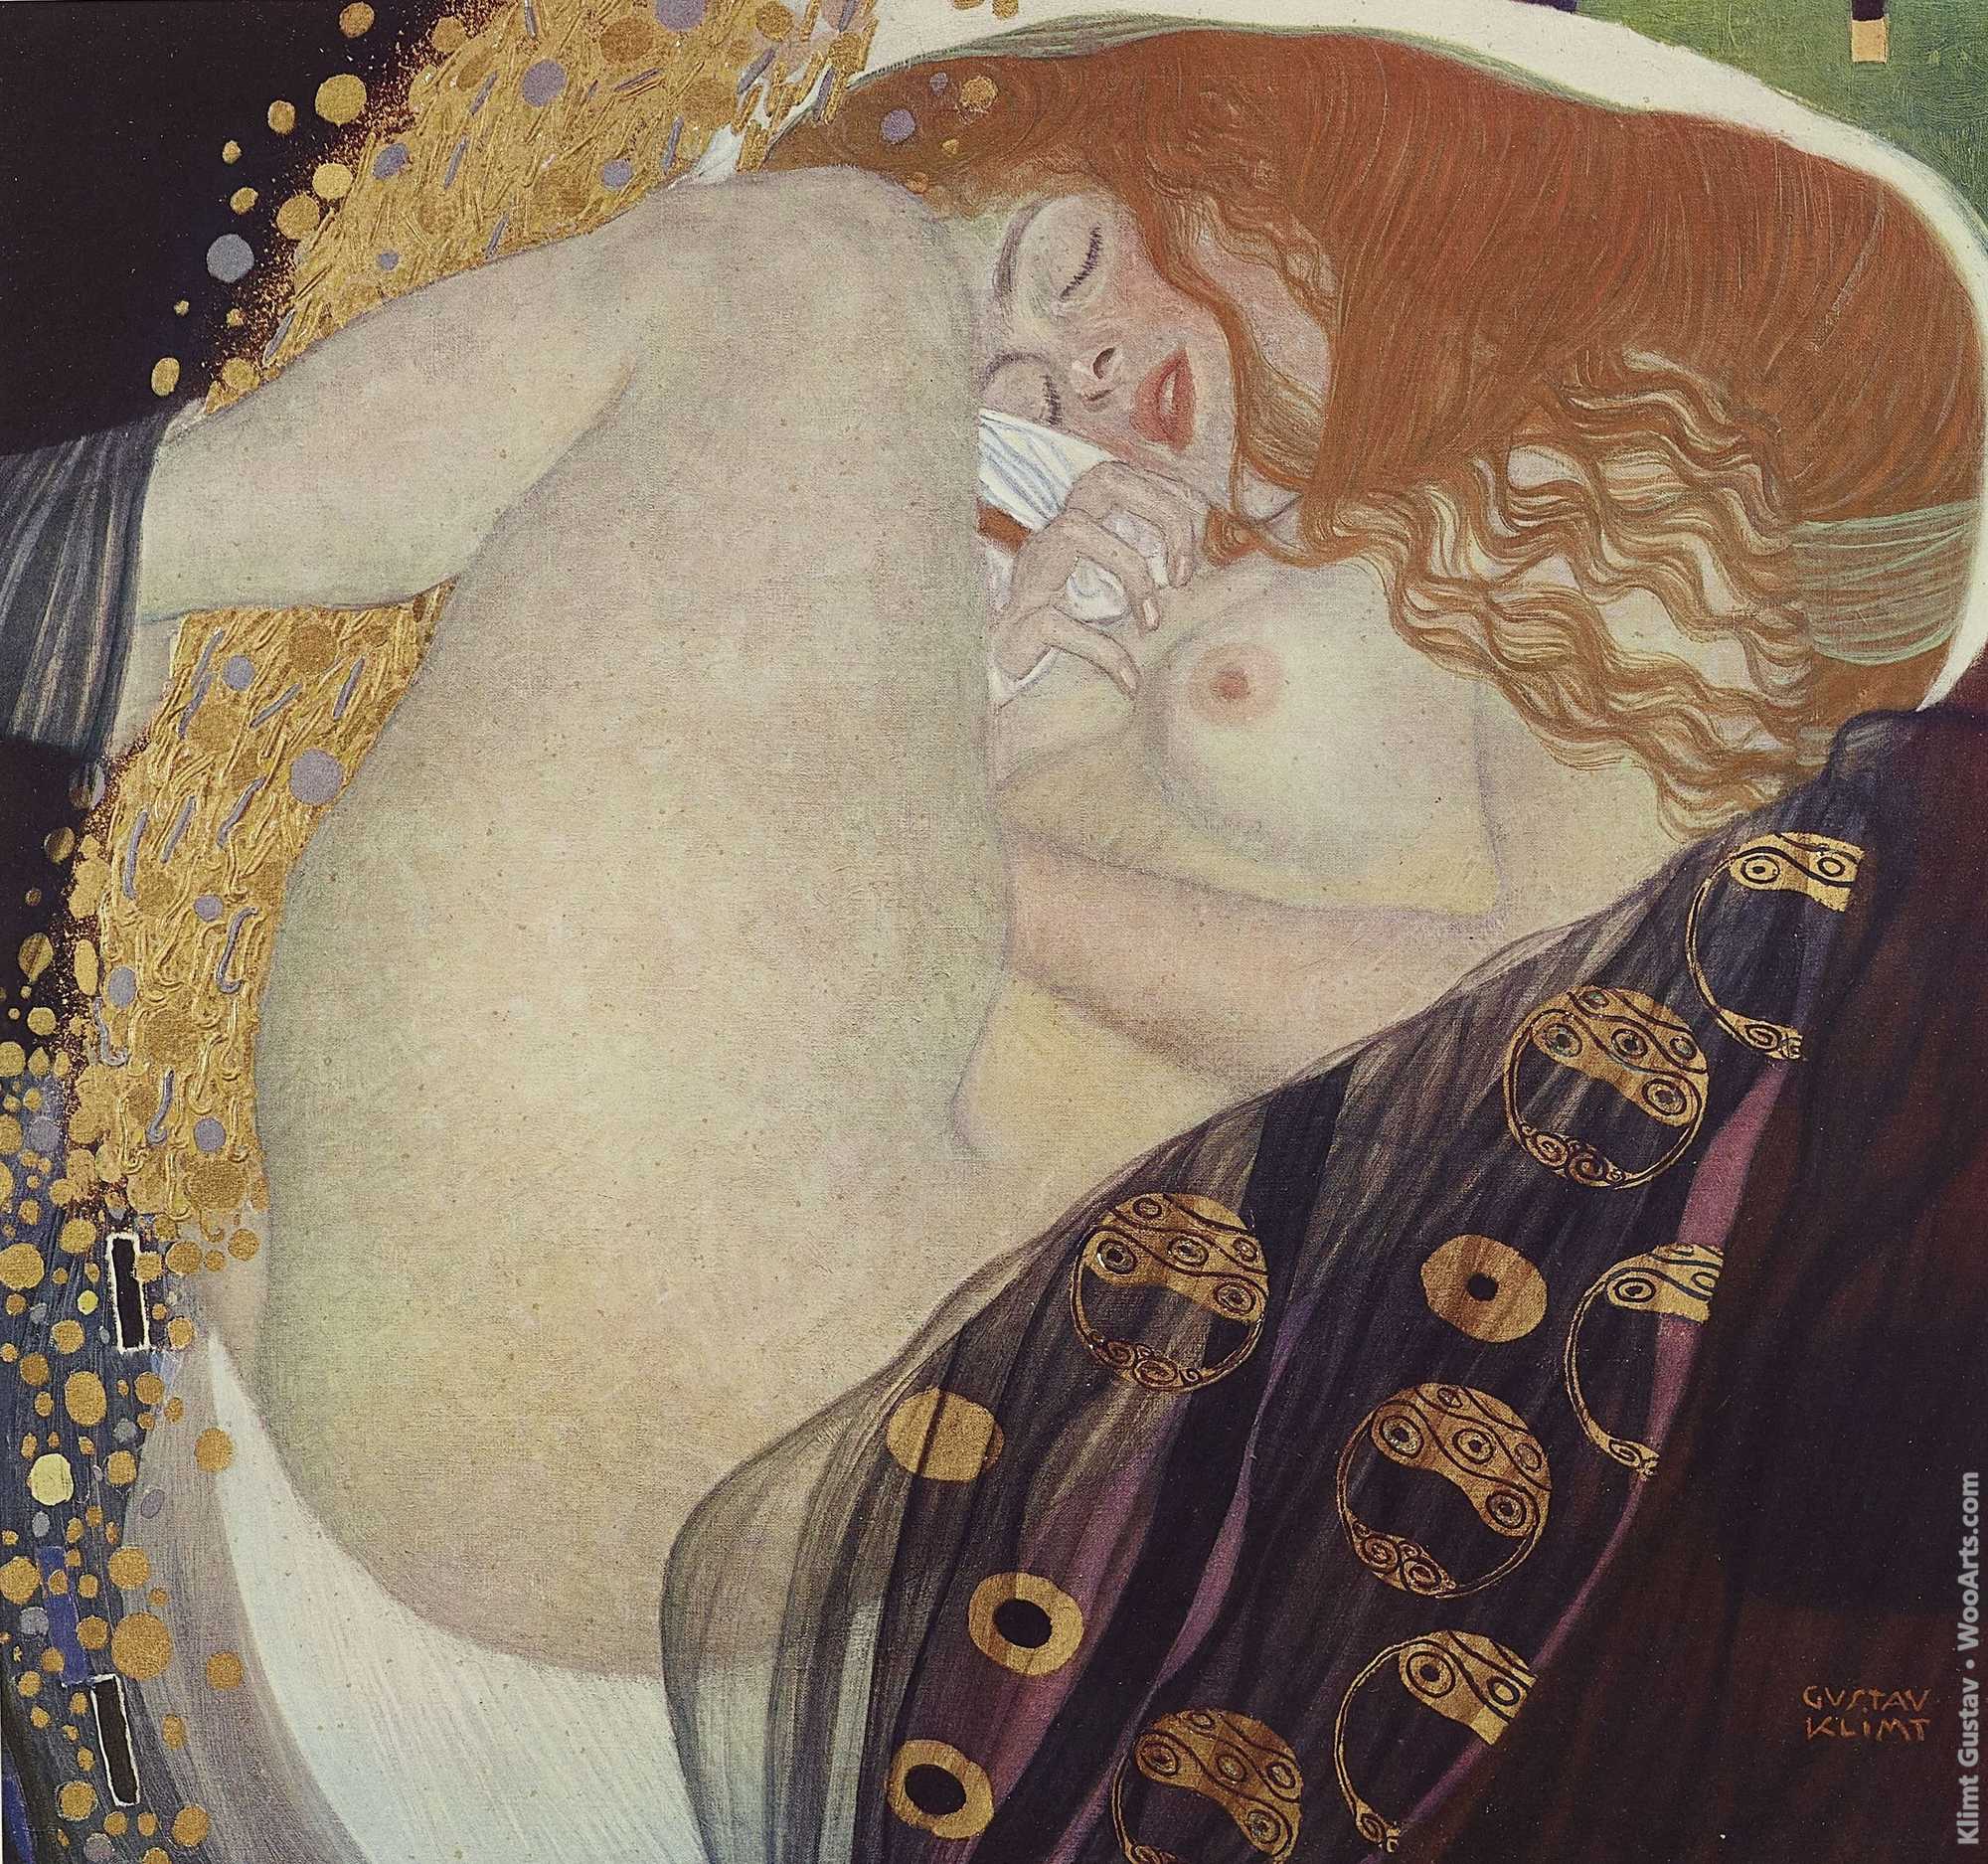 Danaë, 1907-08. Print from the portfolio - Das Werk von Gustav Klimt, ed. by the art publisher Hugo Heller, Vienna - Leipzig Gustav Klimt 1918